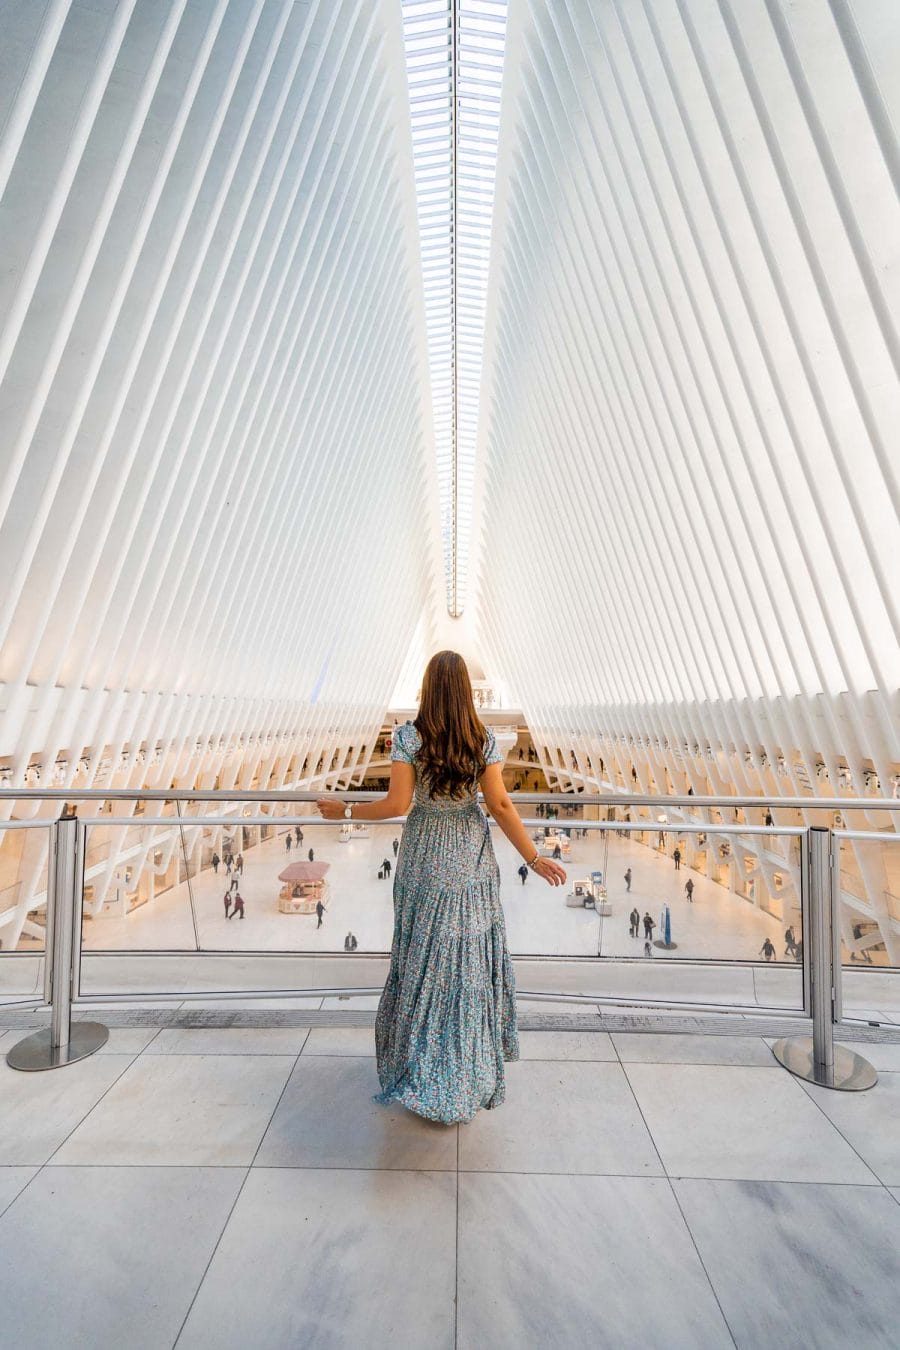 Girl in blue dress inside the Oculus Center in New York